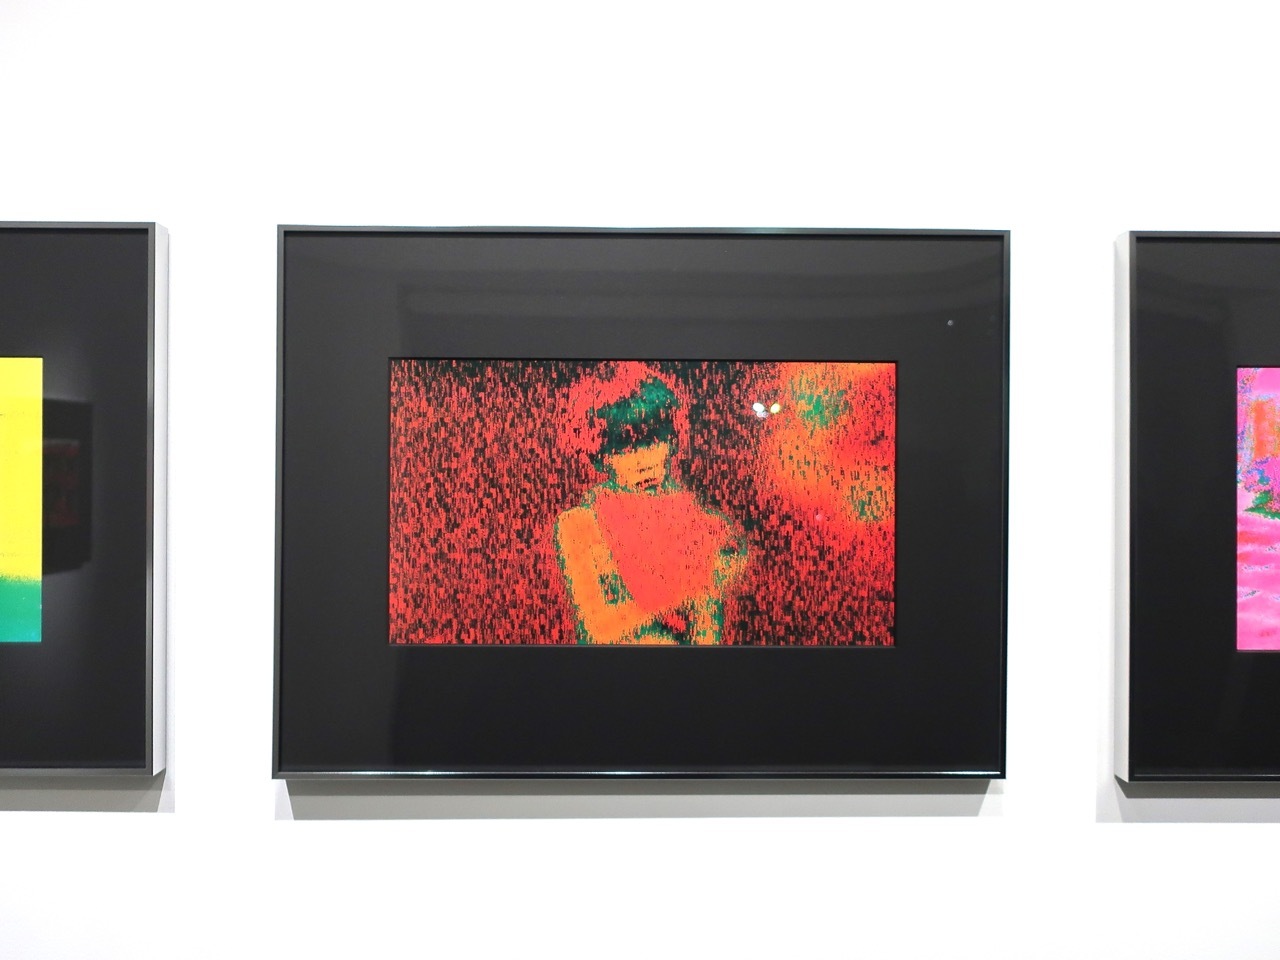 ヴィム・ヴェンダースの電子絵画を初公開する展覧会が中目黒で開催